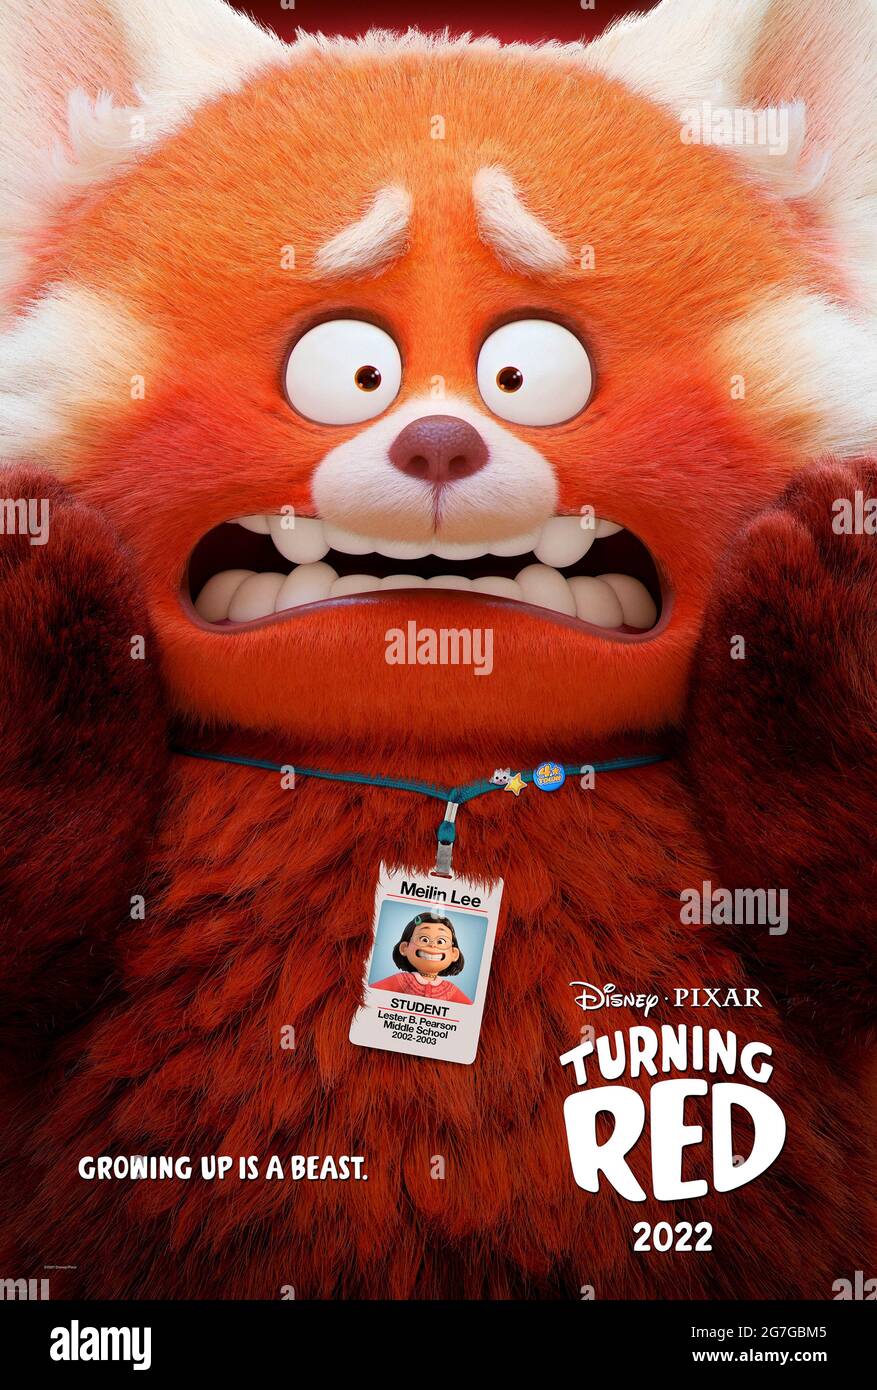 Turning Red (2022) dirigida por Domee Shi y protagonizada por Sandra Oh y Rosalie Chiang. Comedia acerca de una niña de 13 años que se convierte en un panda rojo gigante siempre que ella se emociona demasiado. Foto de stock